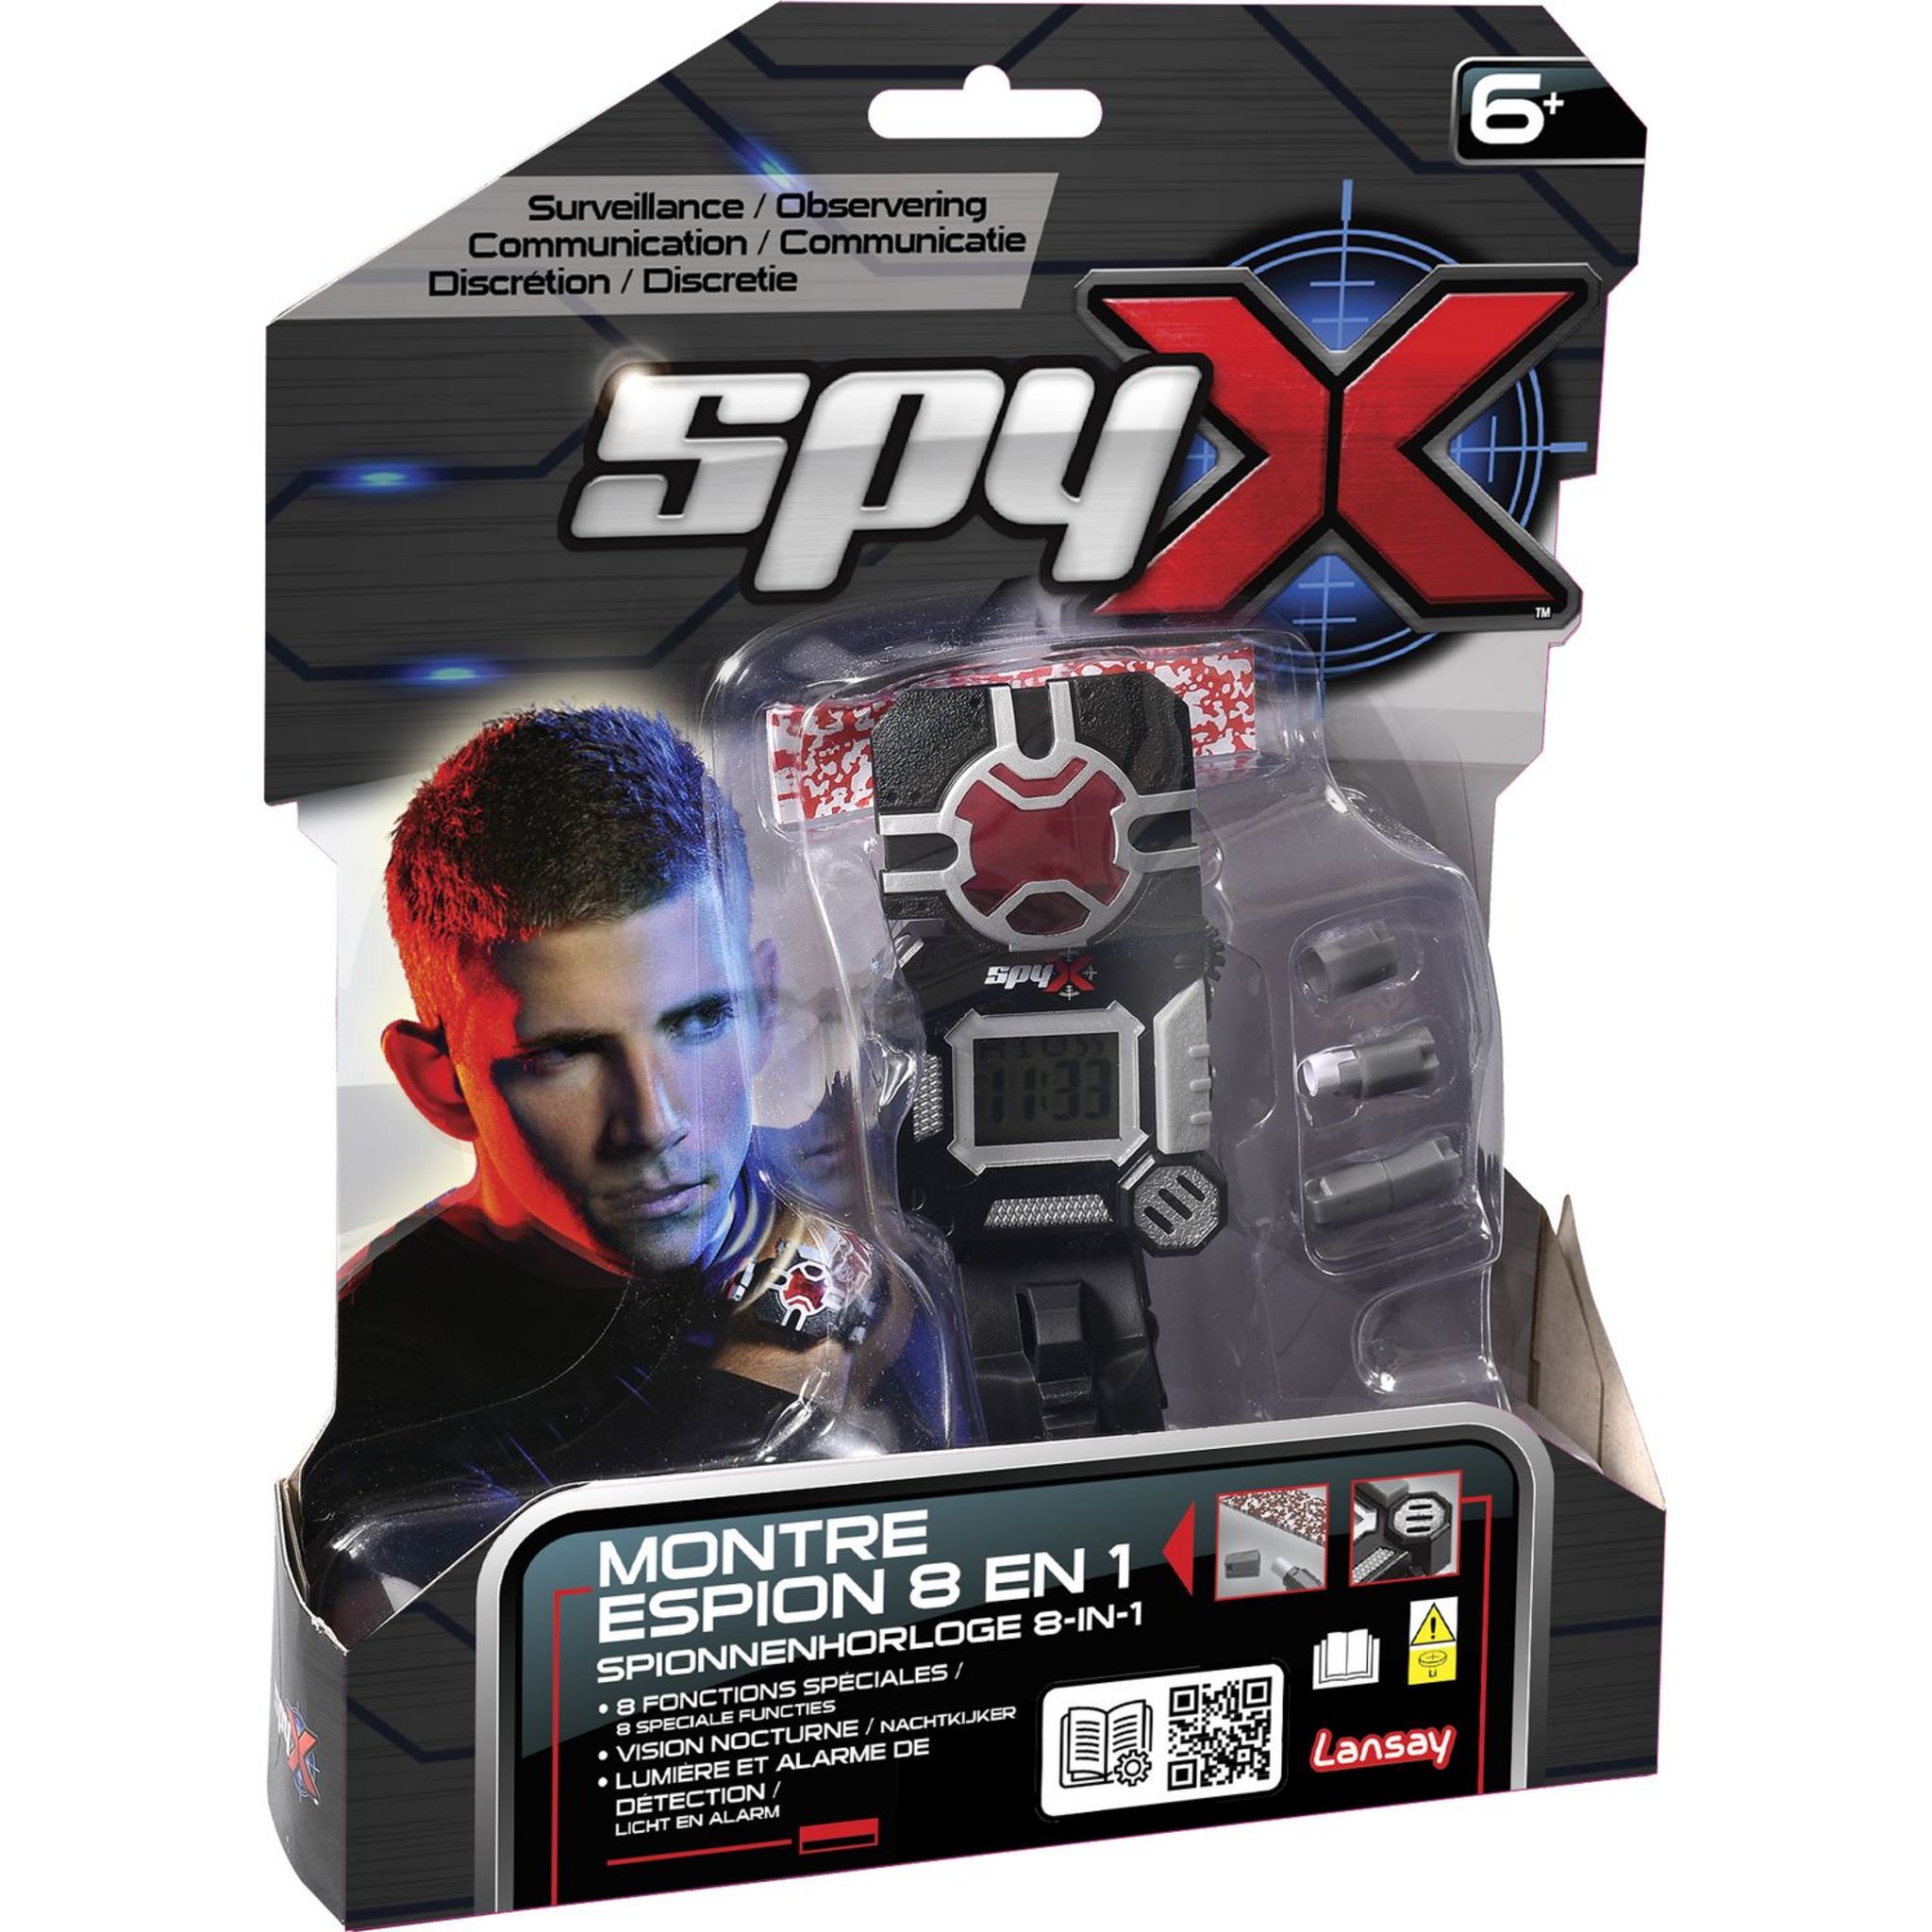 LANSAY SPY X - Écouteurs d'espionnage pas cher 